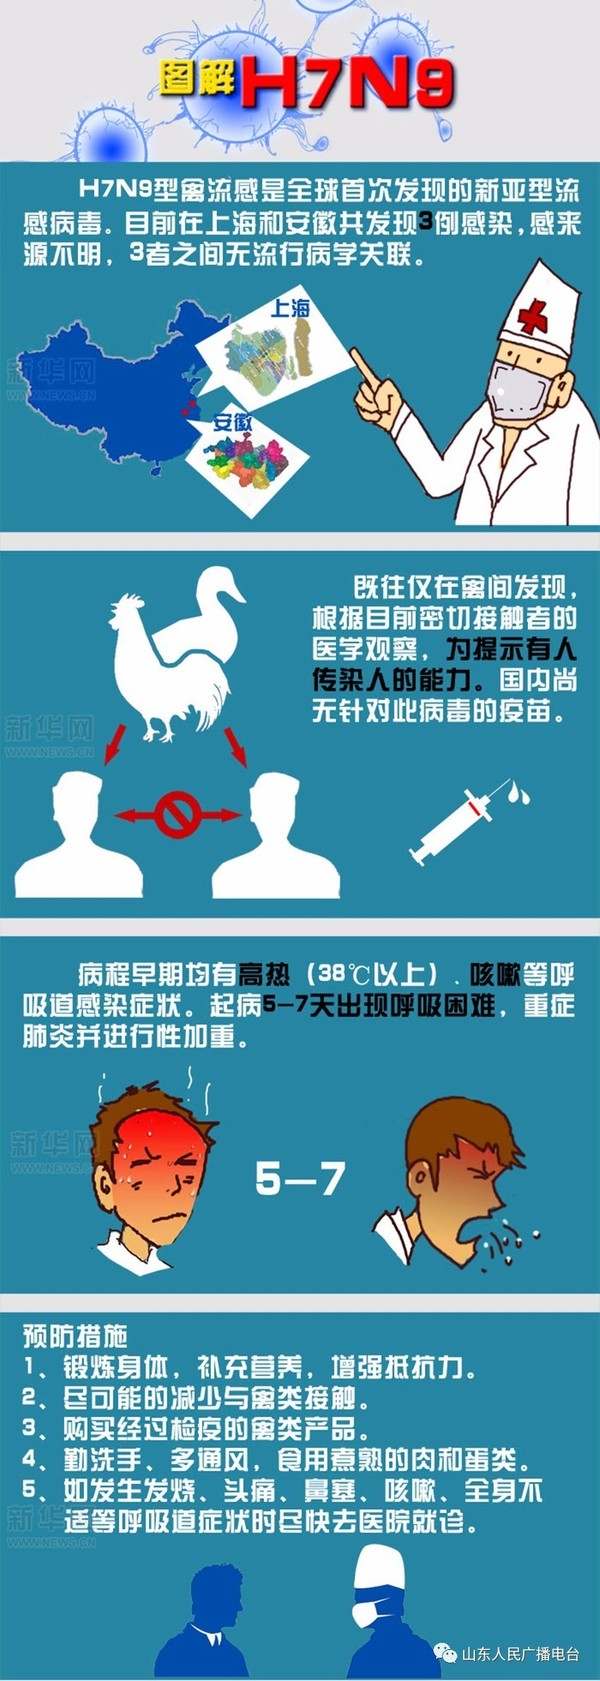 2014甲型流感病毒h7n9疫情动态_甲型h1n1流感疫情免费下载_2013年4月 上海爆发了甲型h7n9流感